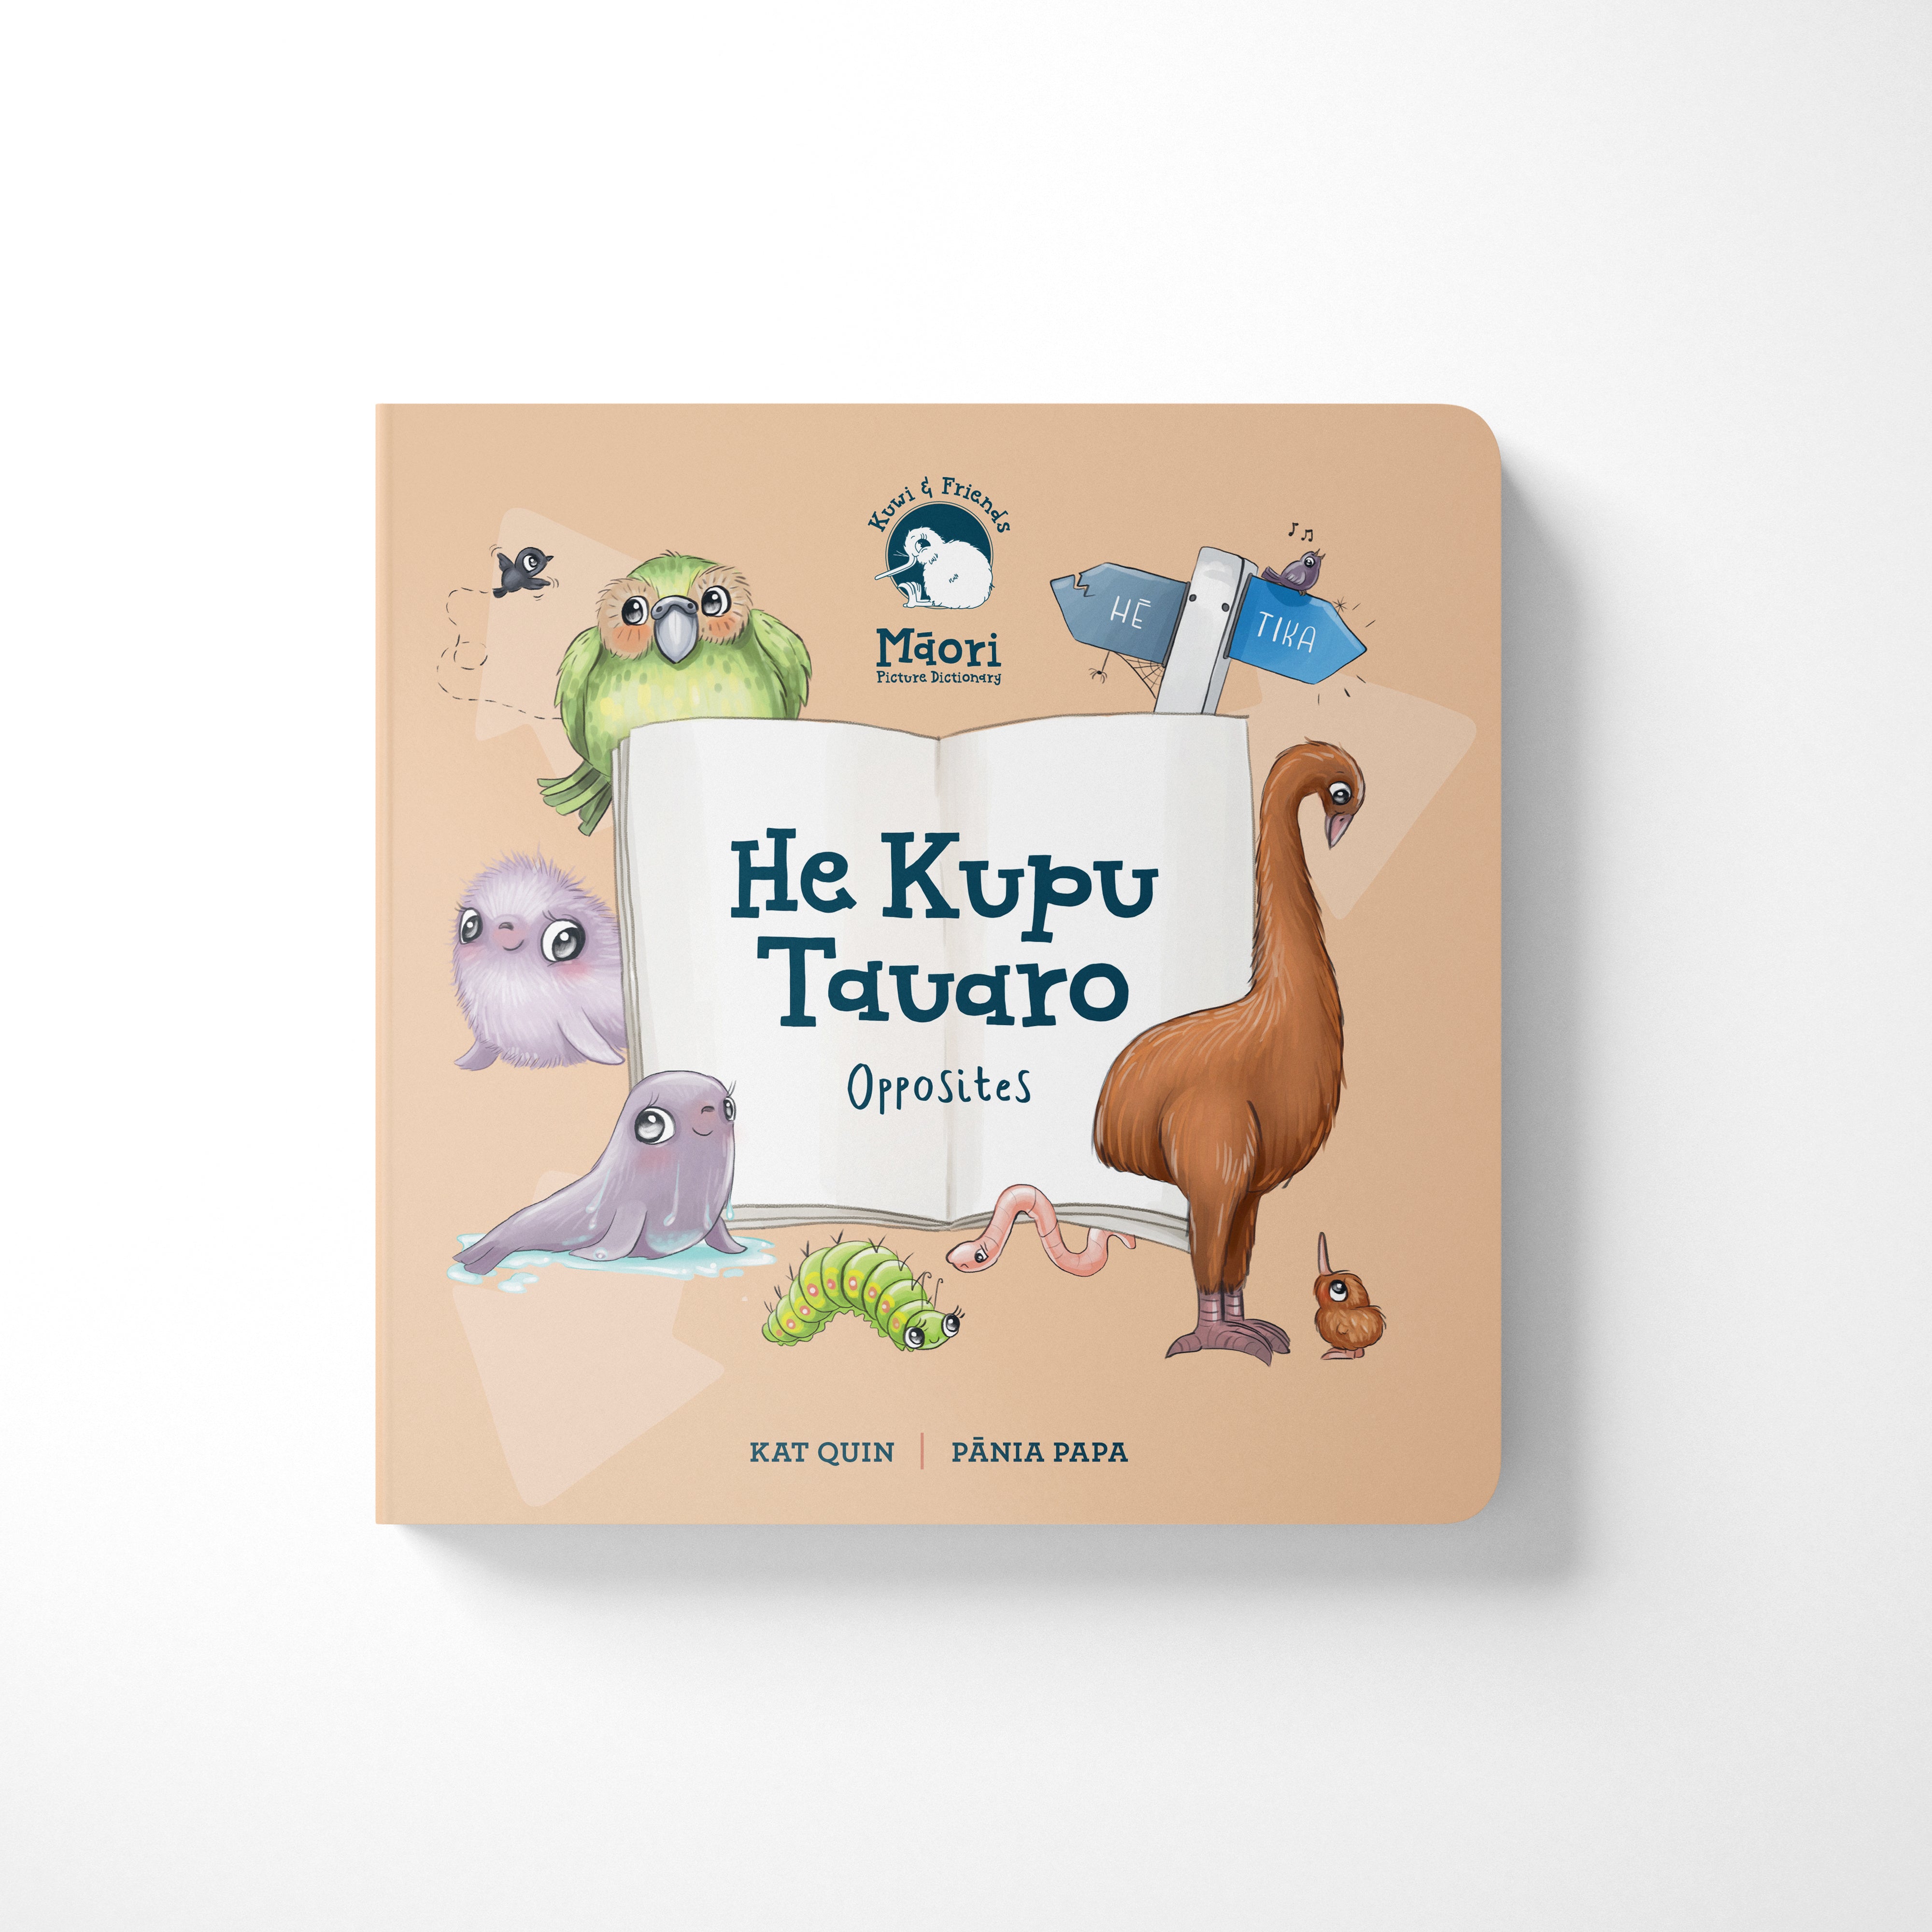 He Kupu Tauaro | Opposites - Board Book